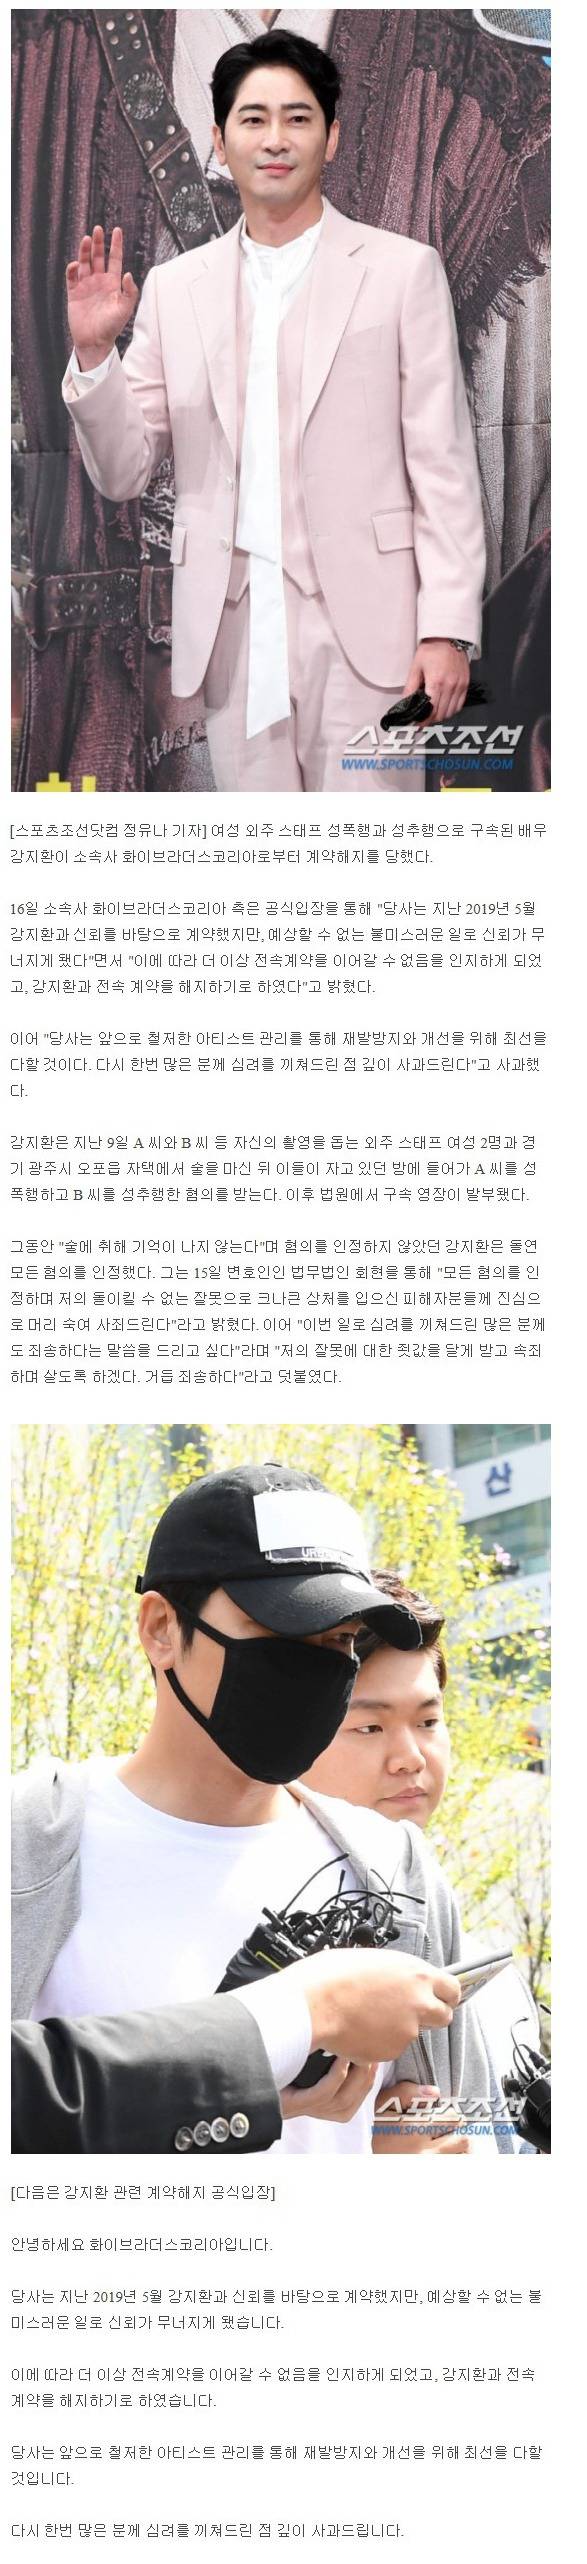 화이브라더스 측"'성폭행 혐의' 강지환과 전속계약 해지, 신뢰 무너졌다"[공식입장전문] | 인스티즈